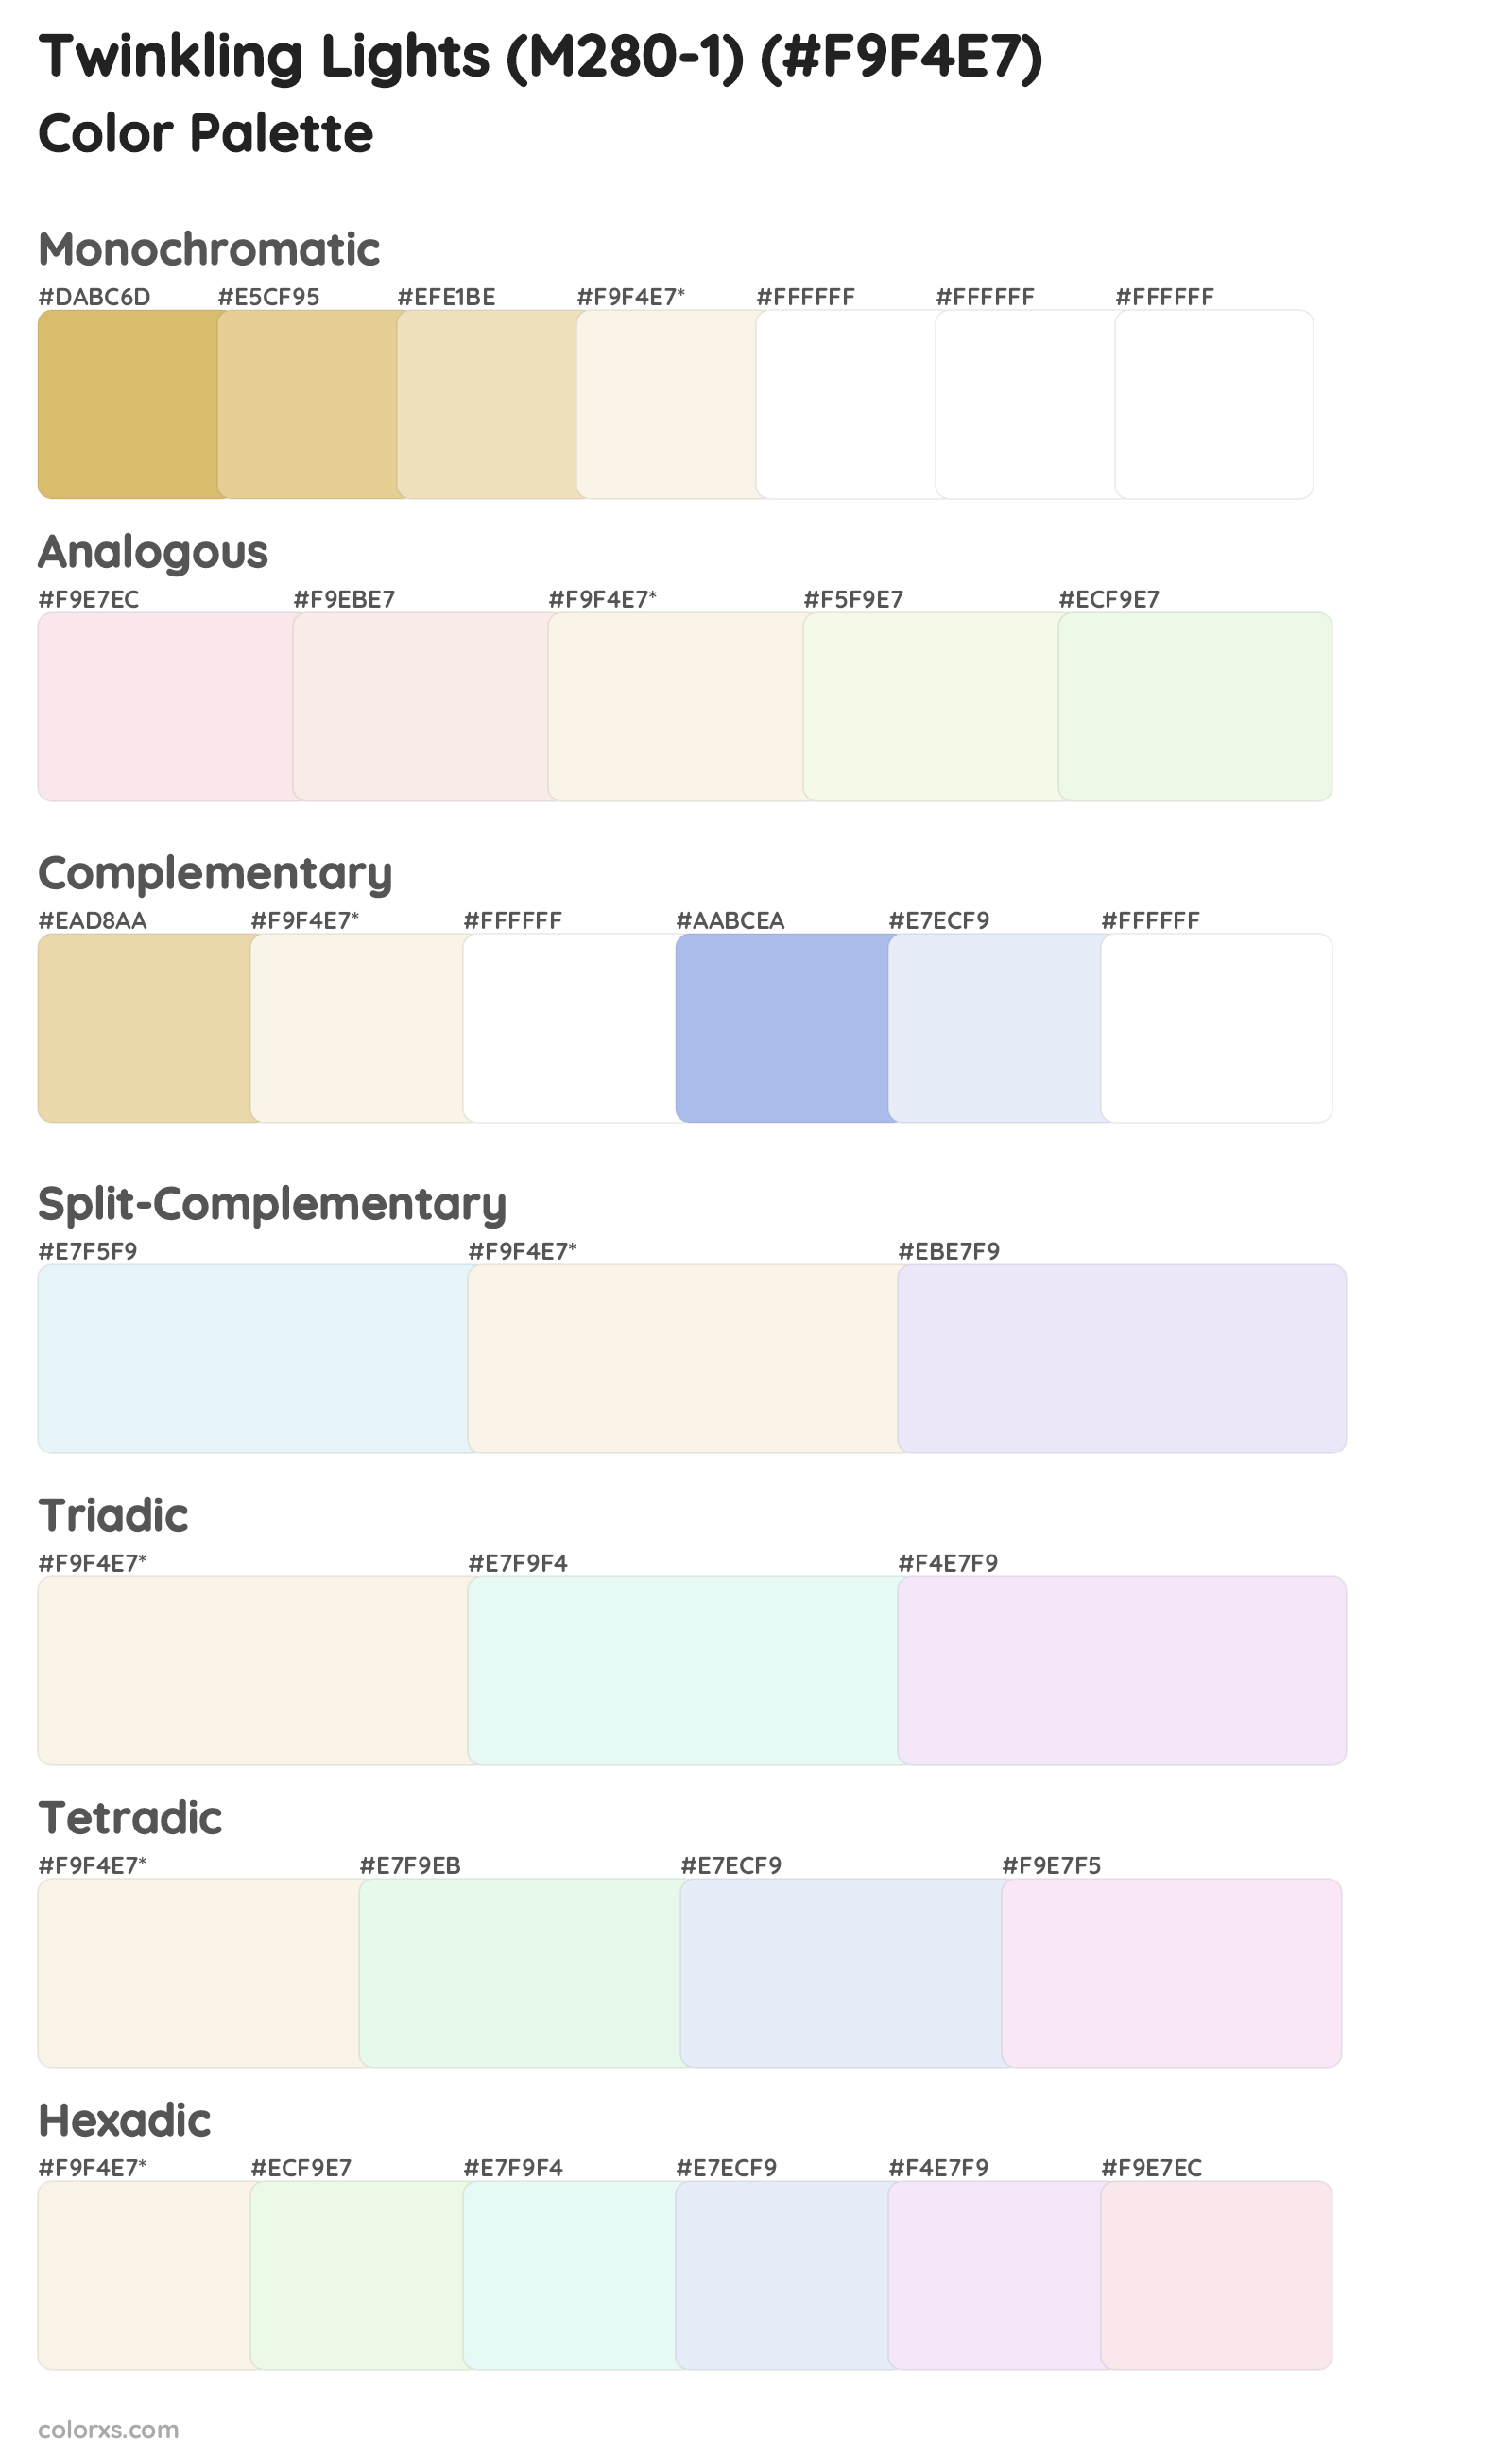 Twinkling Lights (M280-1) Color Scheme Palettes